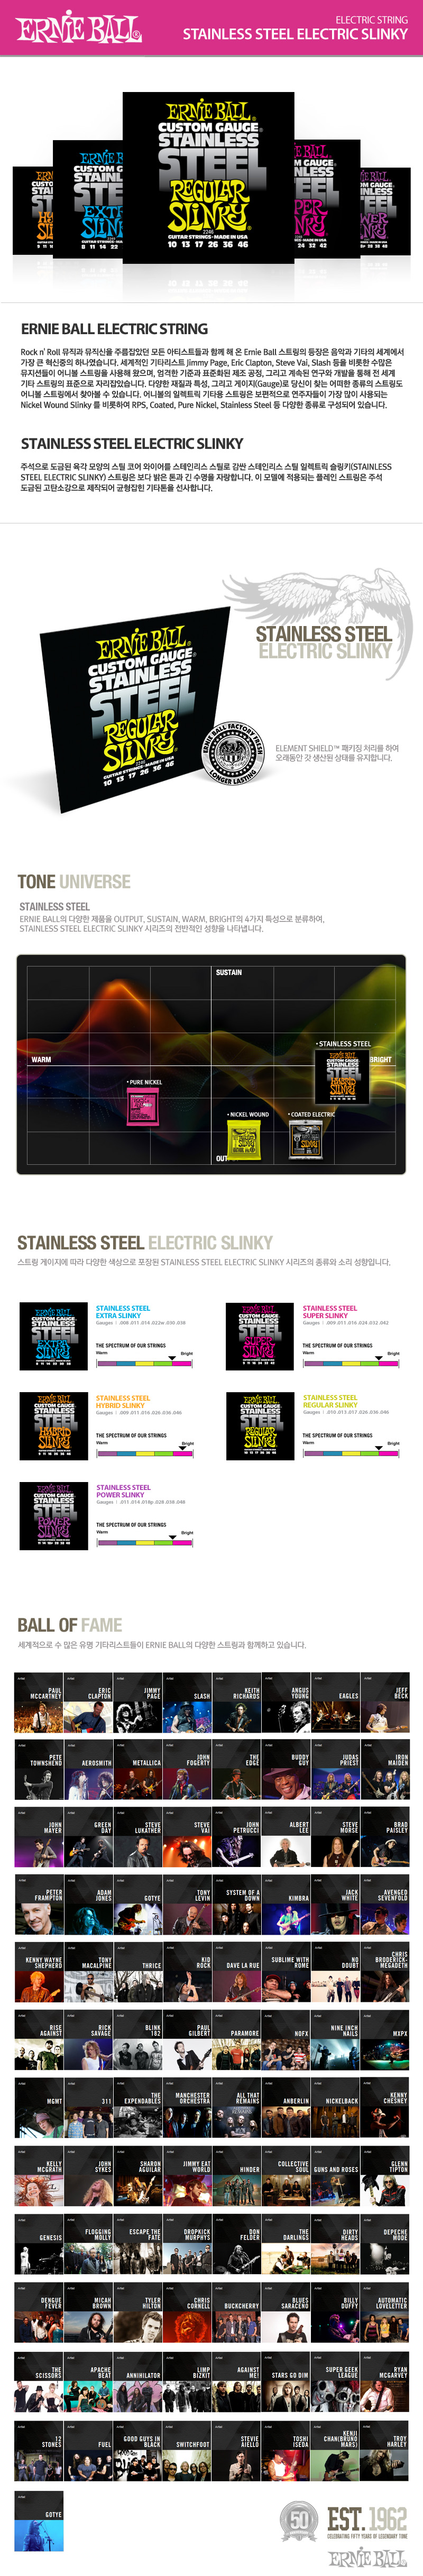 Stainless_Steel_Slinky_detail_153958.jpg